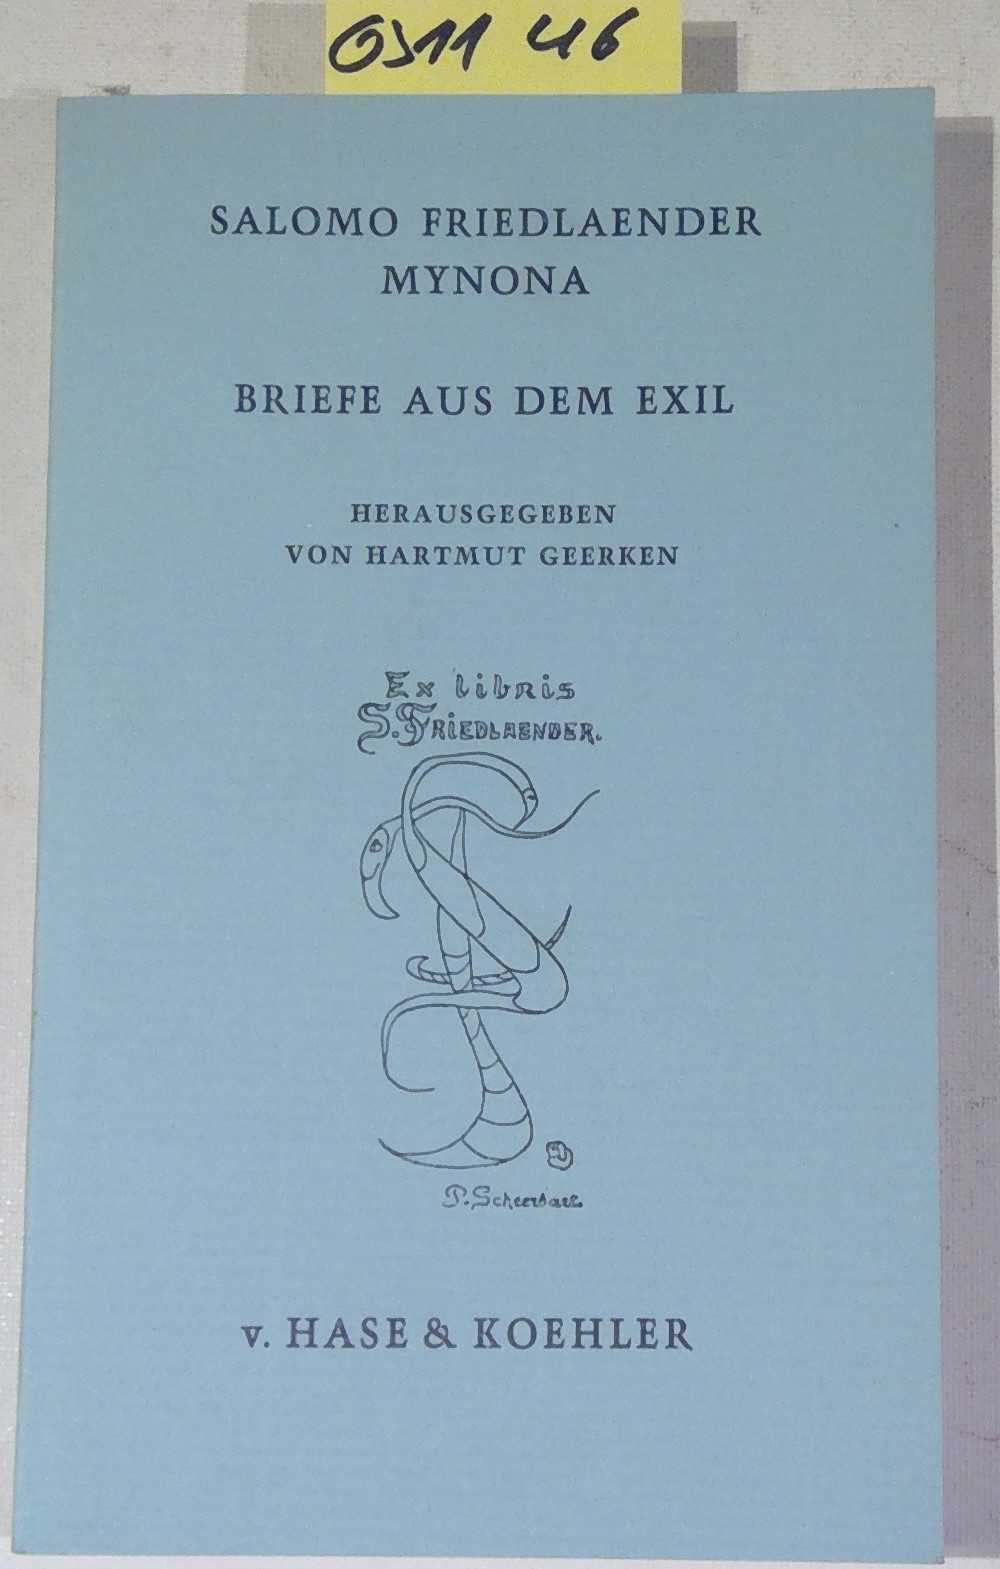 Briefe aus dem Exil, 1933-1946 (Mainzer Reihe, Band 54) - Friedlaender, Salomo (Mynona) / Geerken, Hartmut - Herausgeber